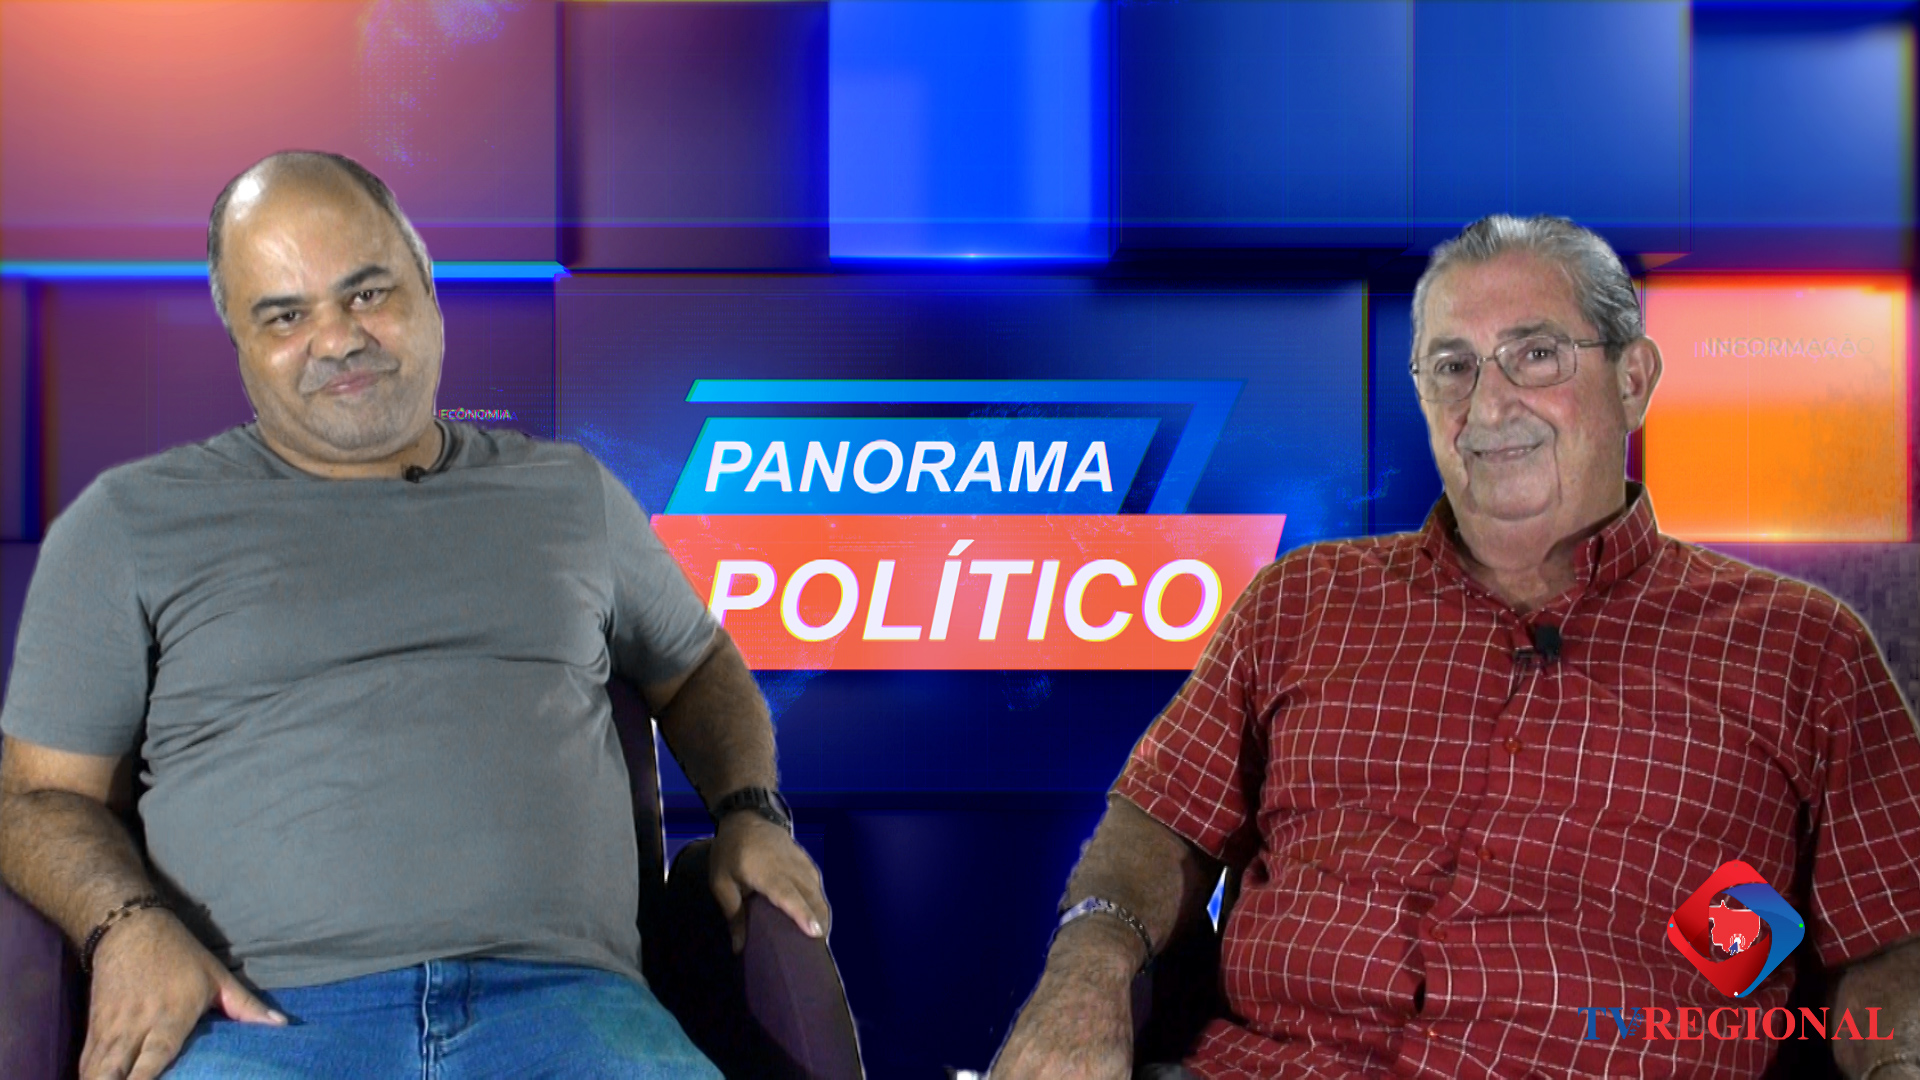 Panorama Político com Biliu